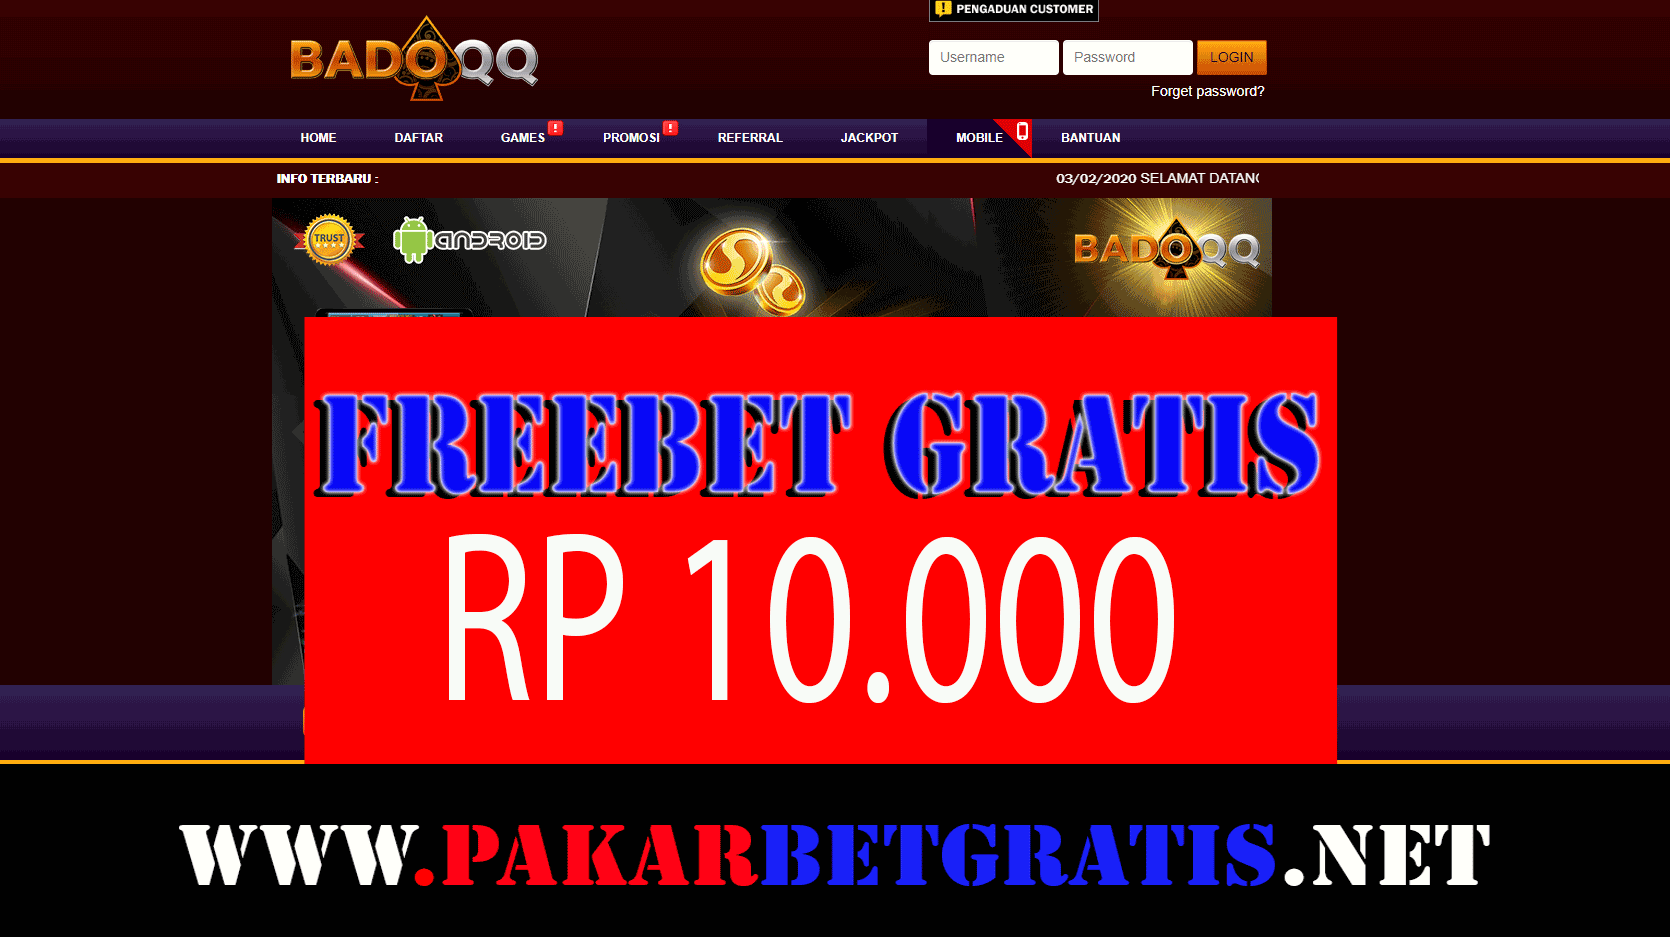 Badoqq Freebet Gratis Rp 10.000 Tanpa deposit